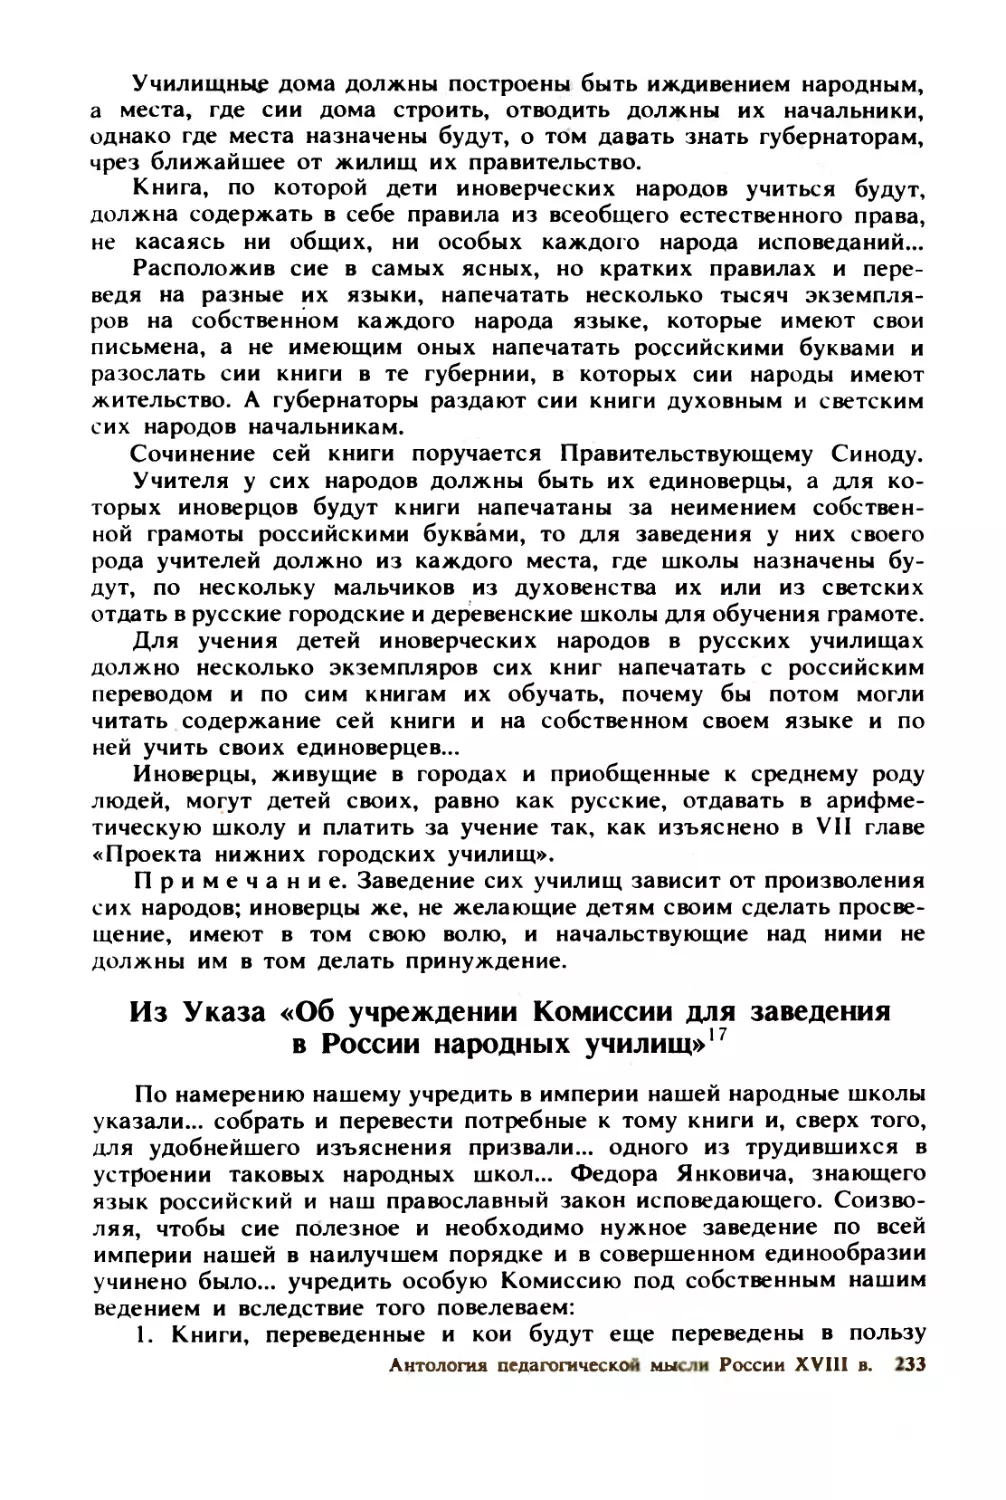 Из  Указа  «Об  учреждении  Комиссии  для  заведения  в  России  народных  училищ»